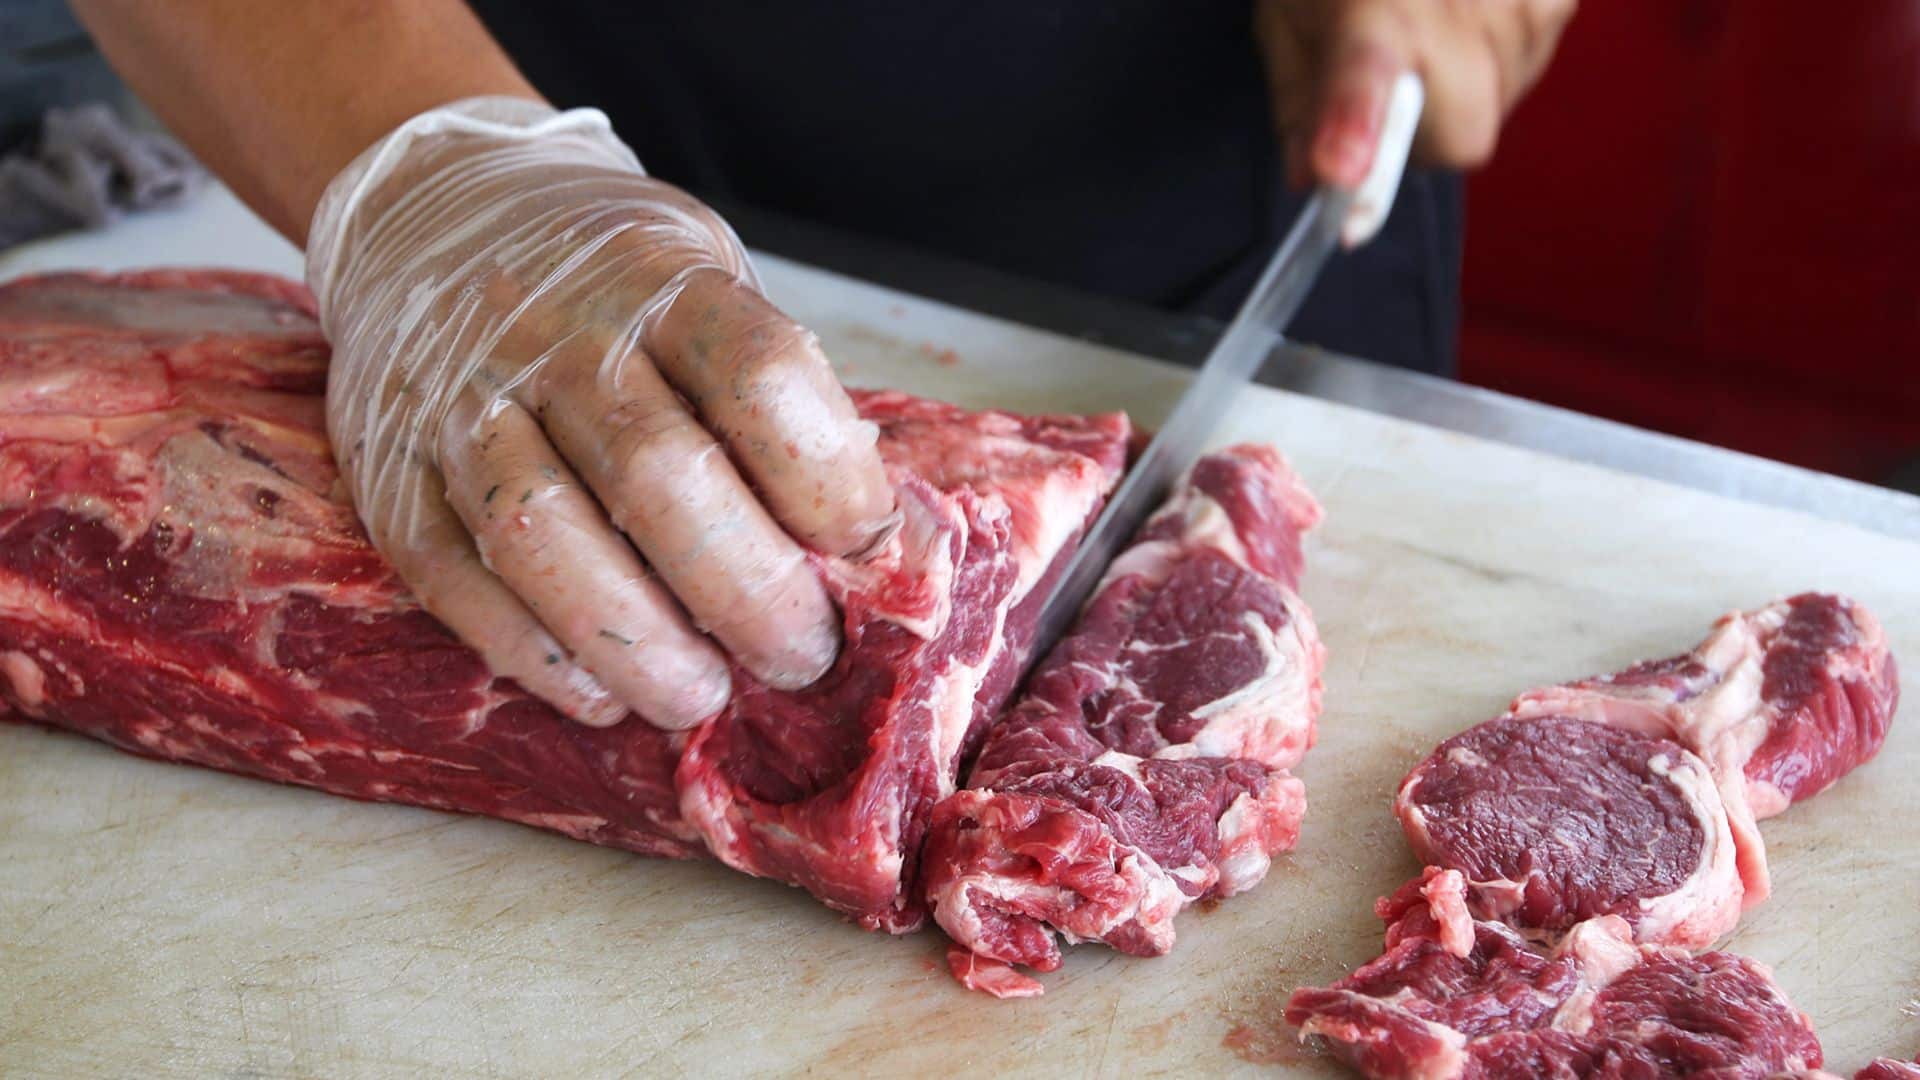 Como cortar carne para churrasco